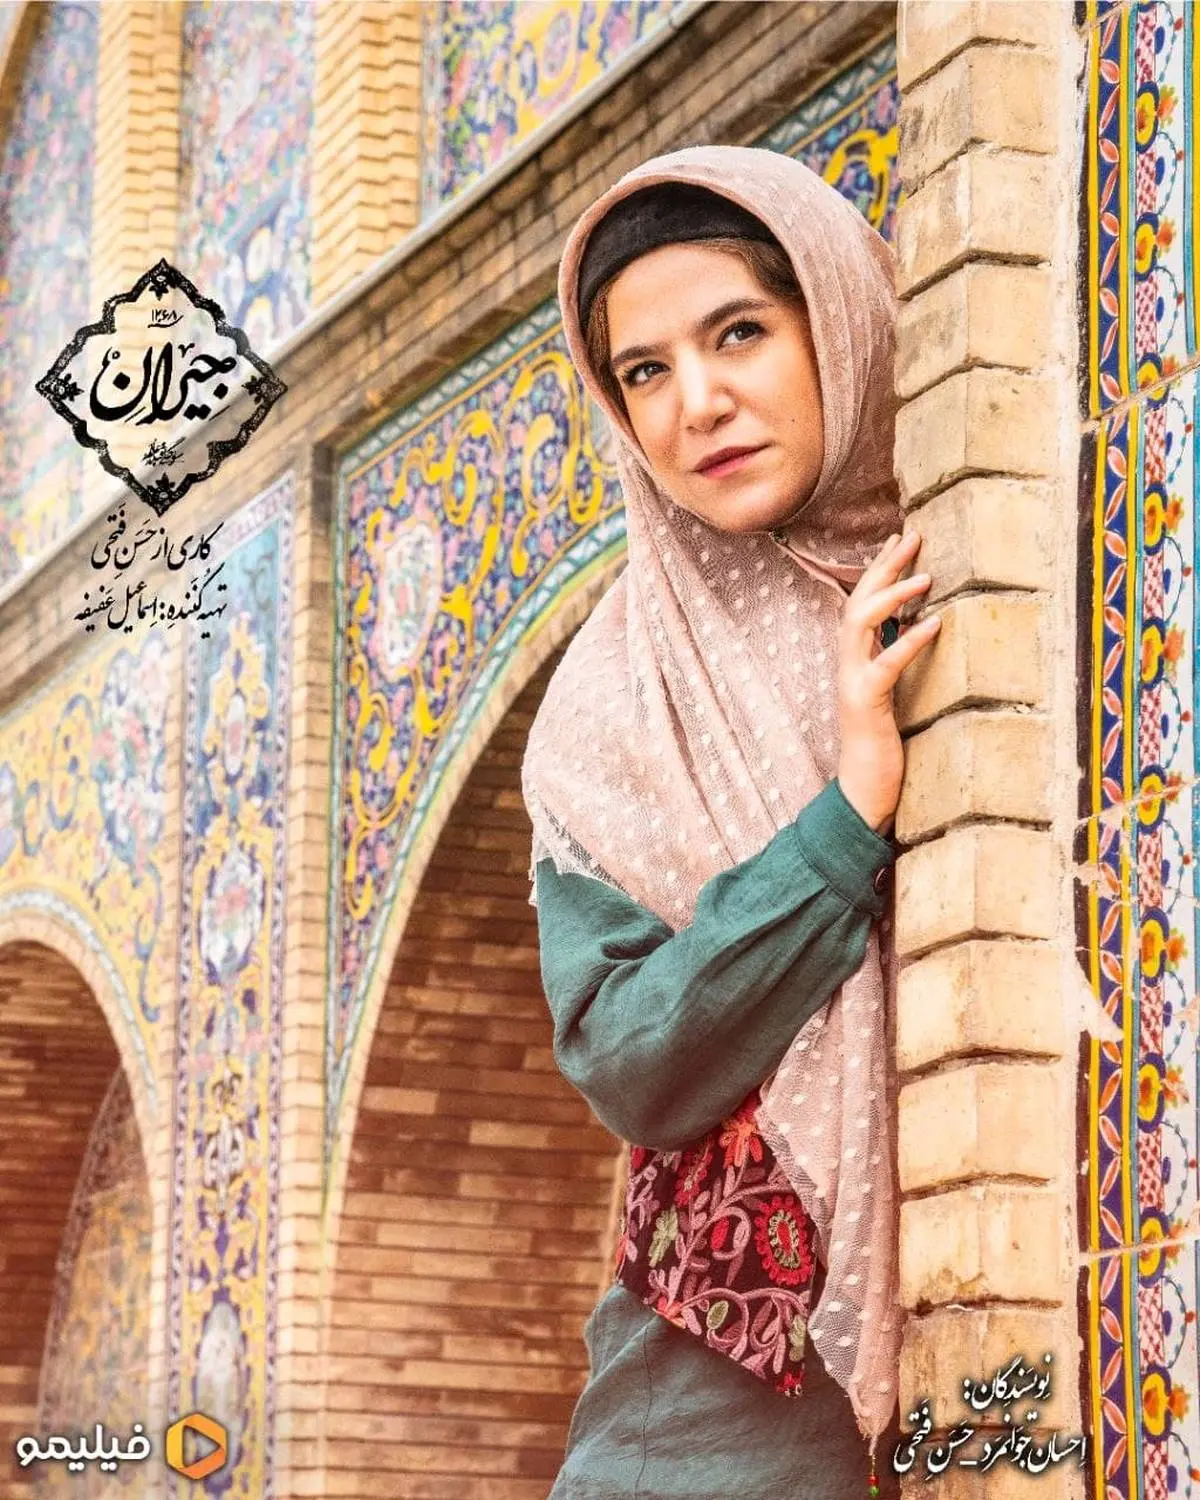 آخرین خبرها از سریال "جیران" حسن فتحی